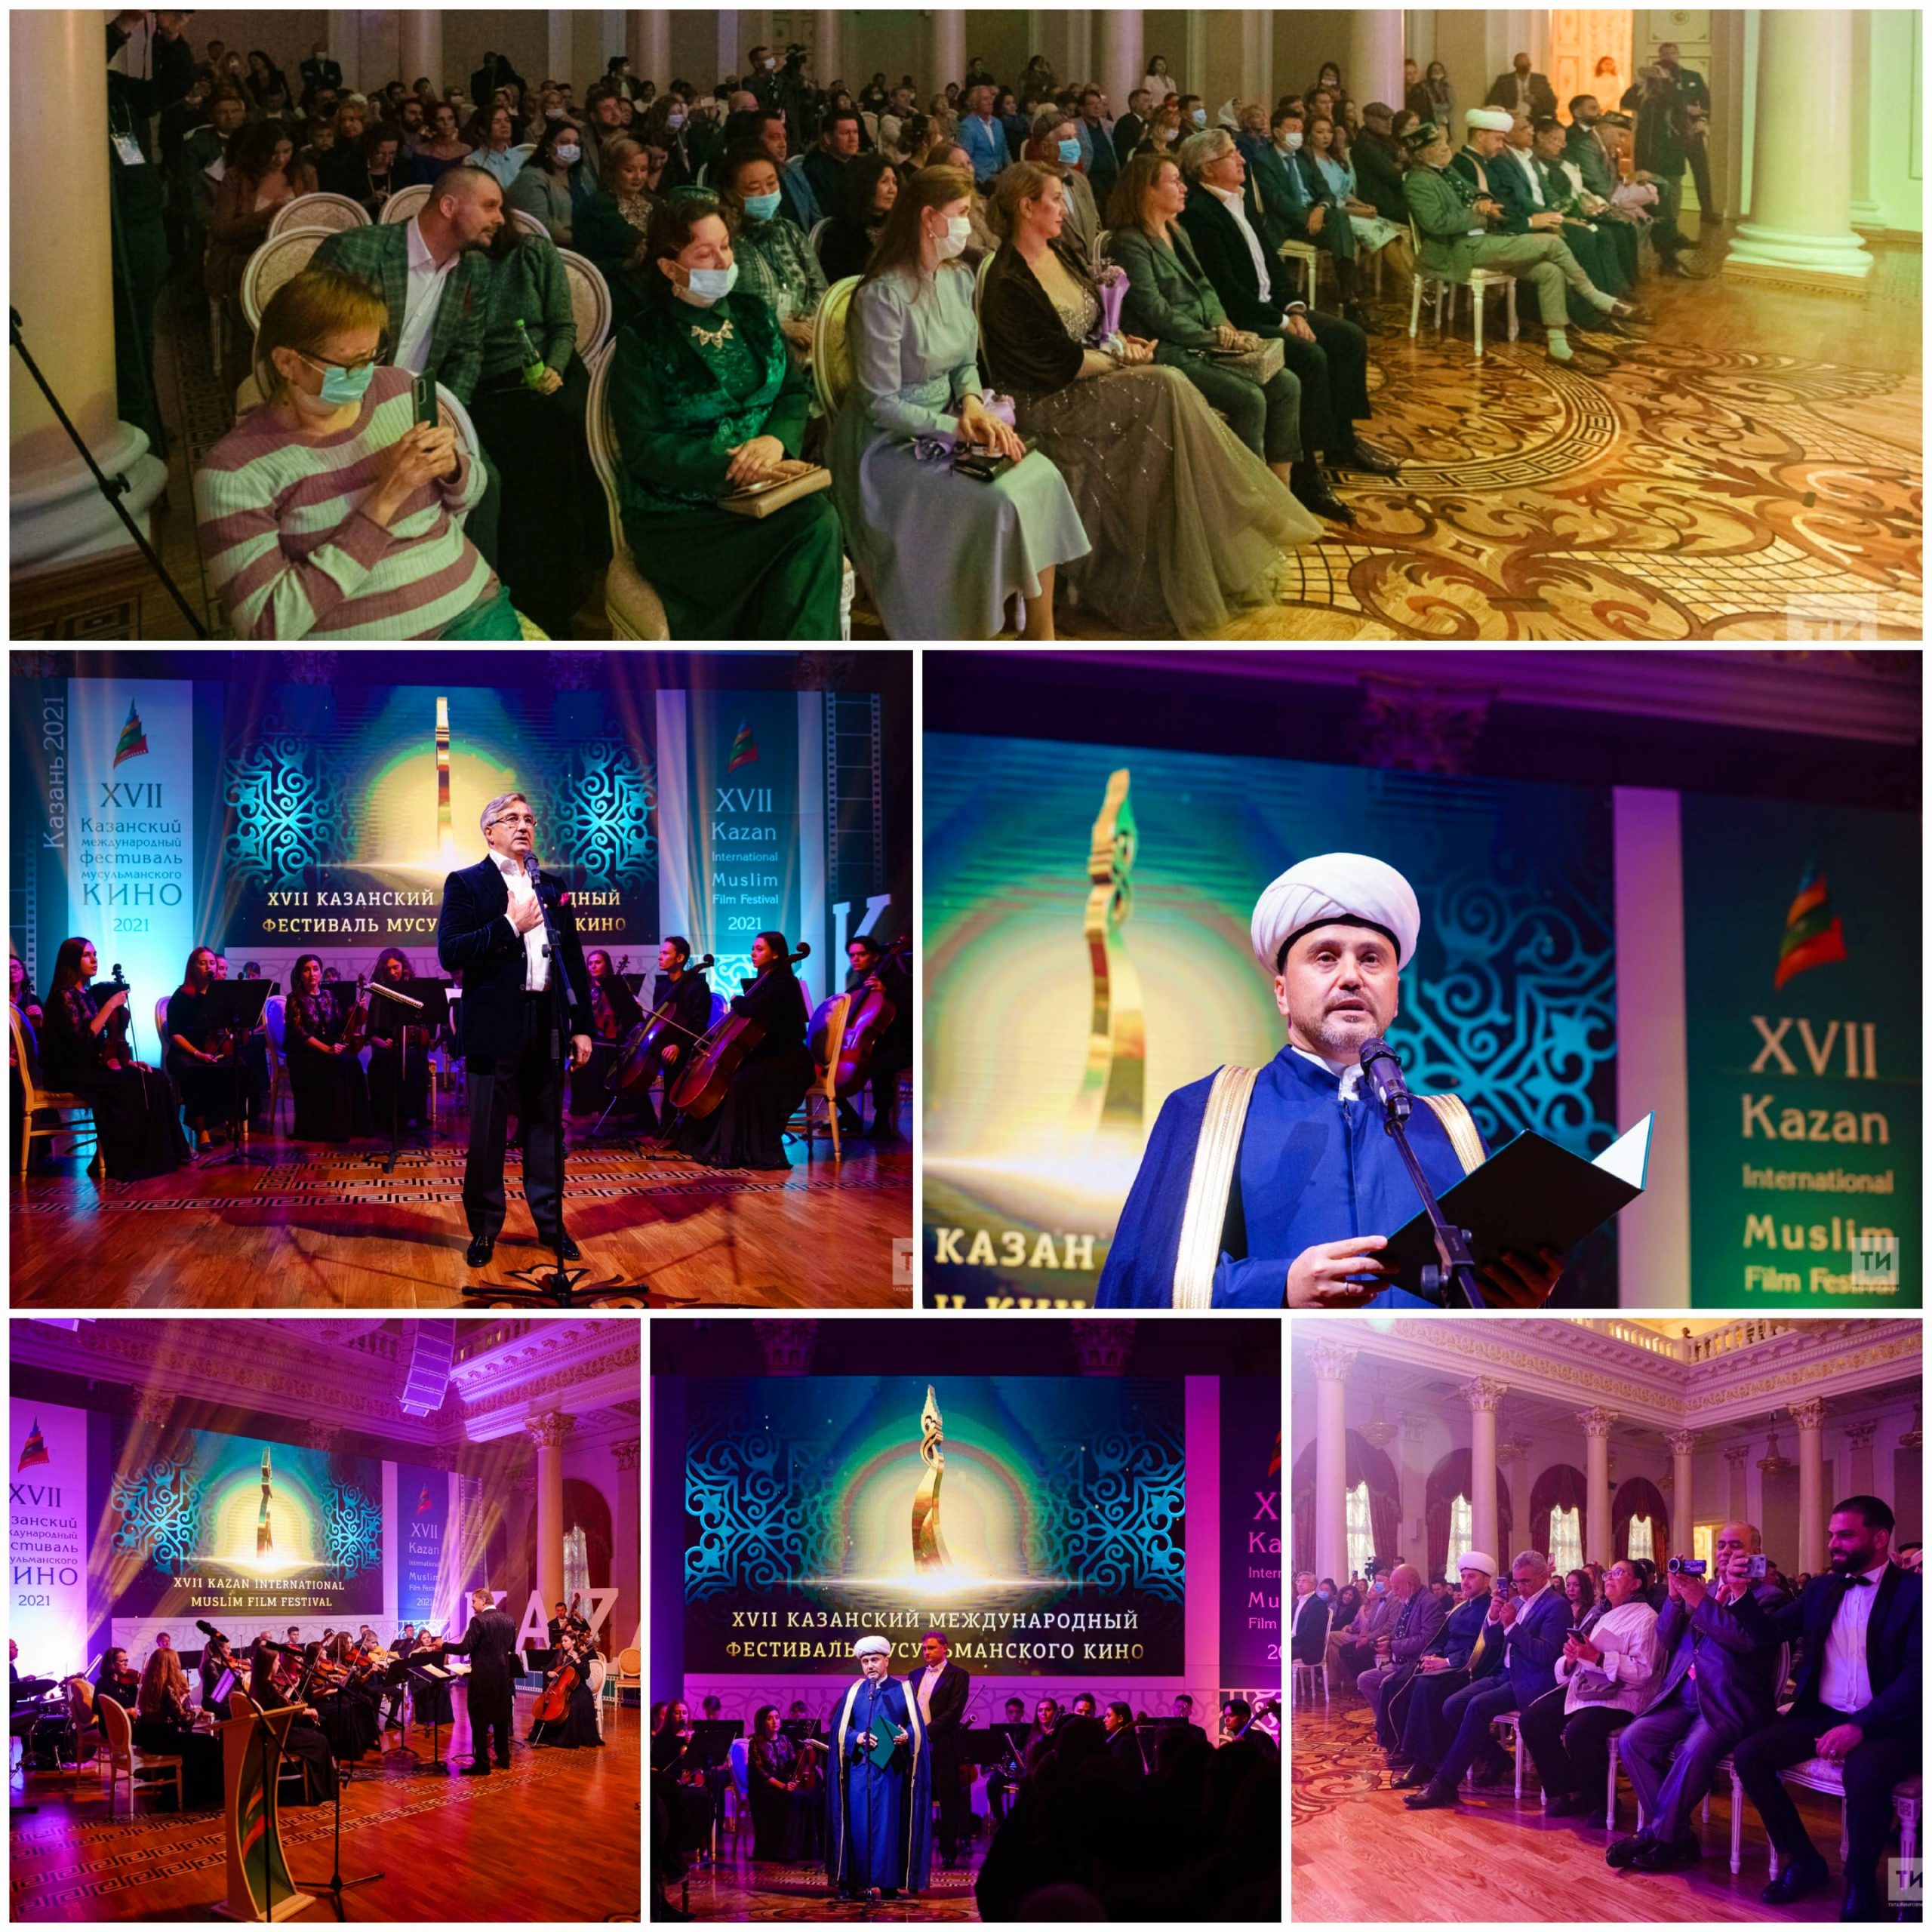 يعد مجلس شورى المفتين الروس، الرئيس الدائم لـ"مهرجان قازان الدولي للسينما الإسلامية"